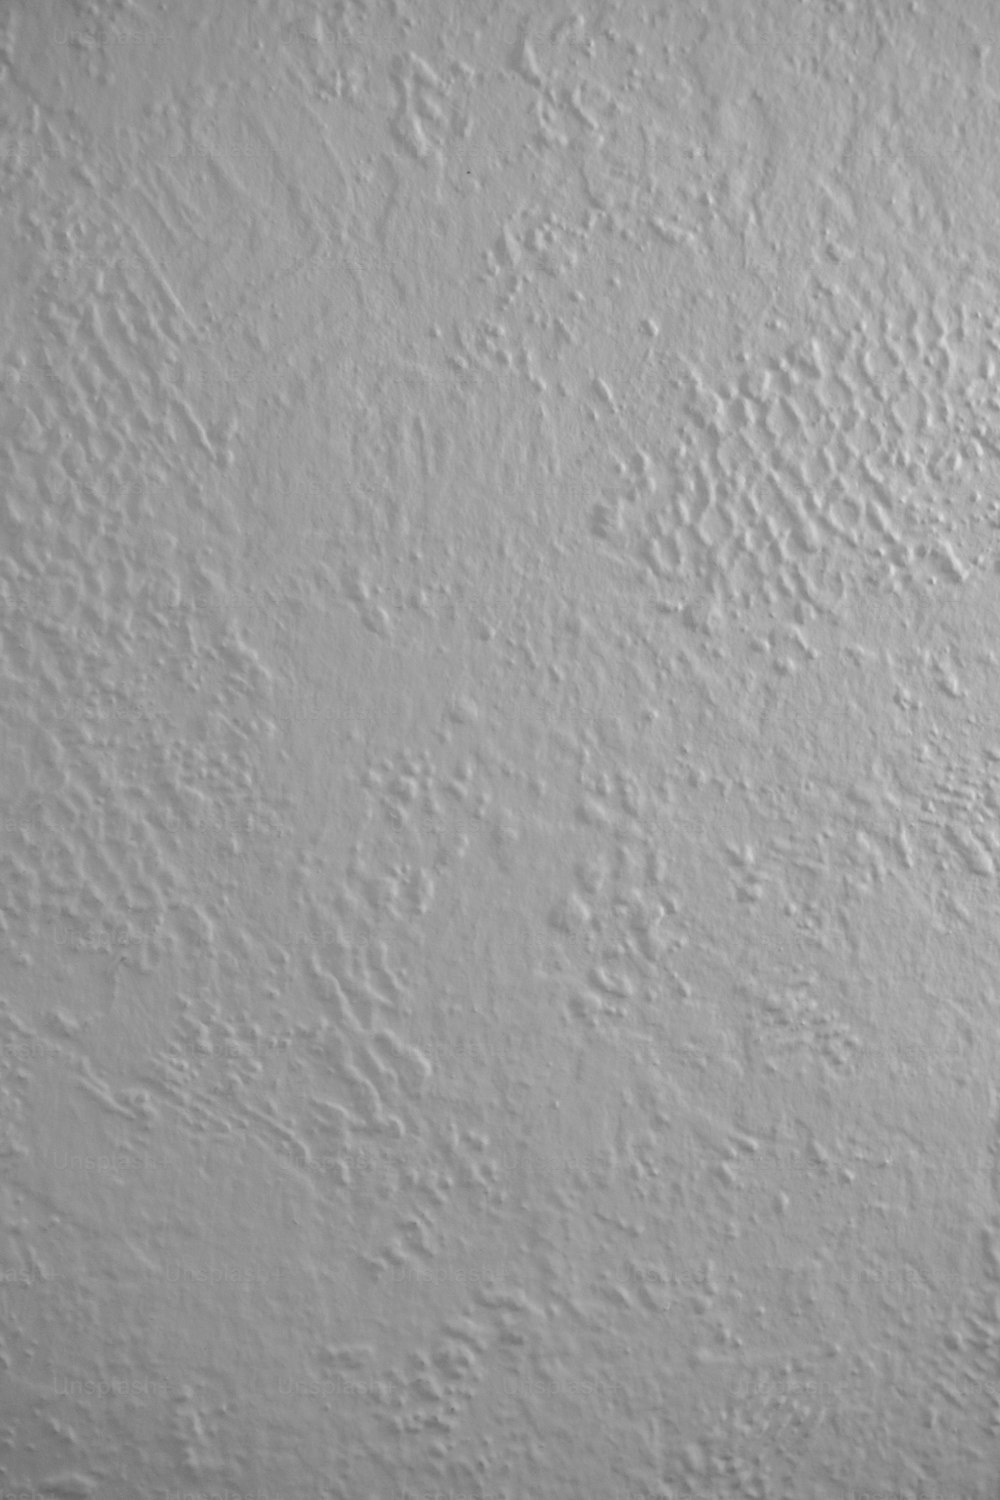 ein Schwarz-Weiß-Foto einer weißen Wand